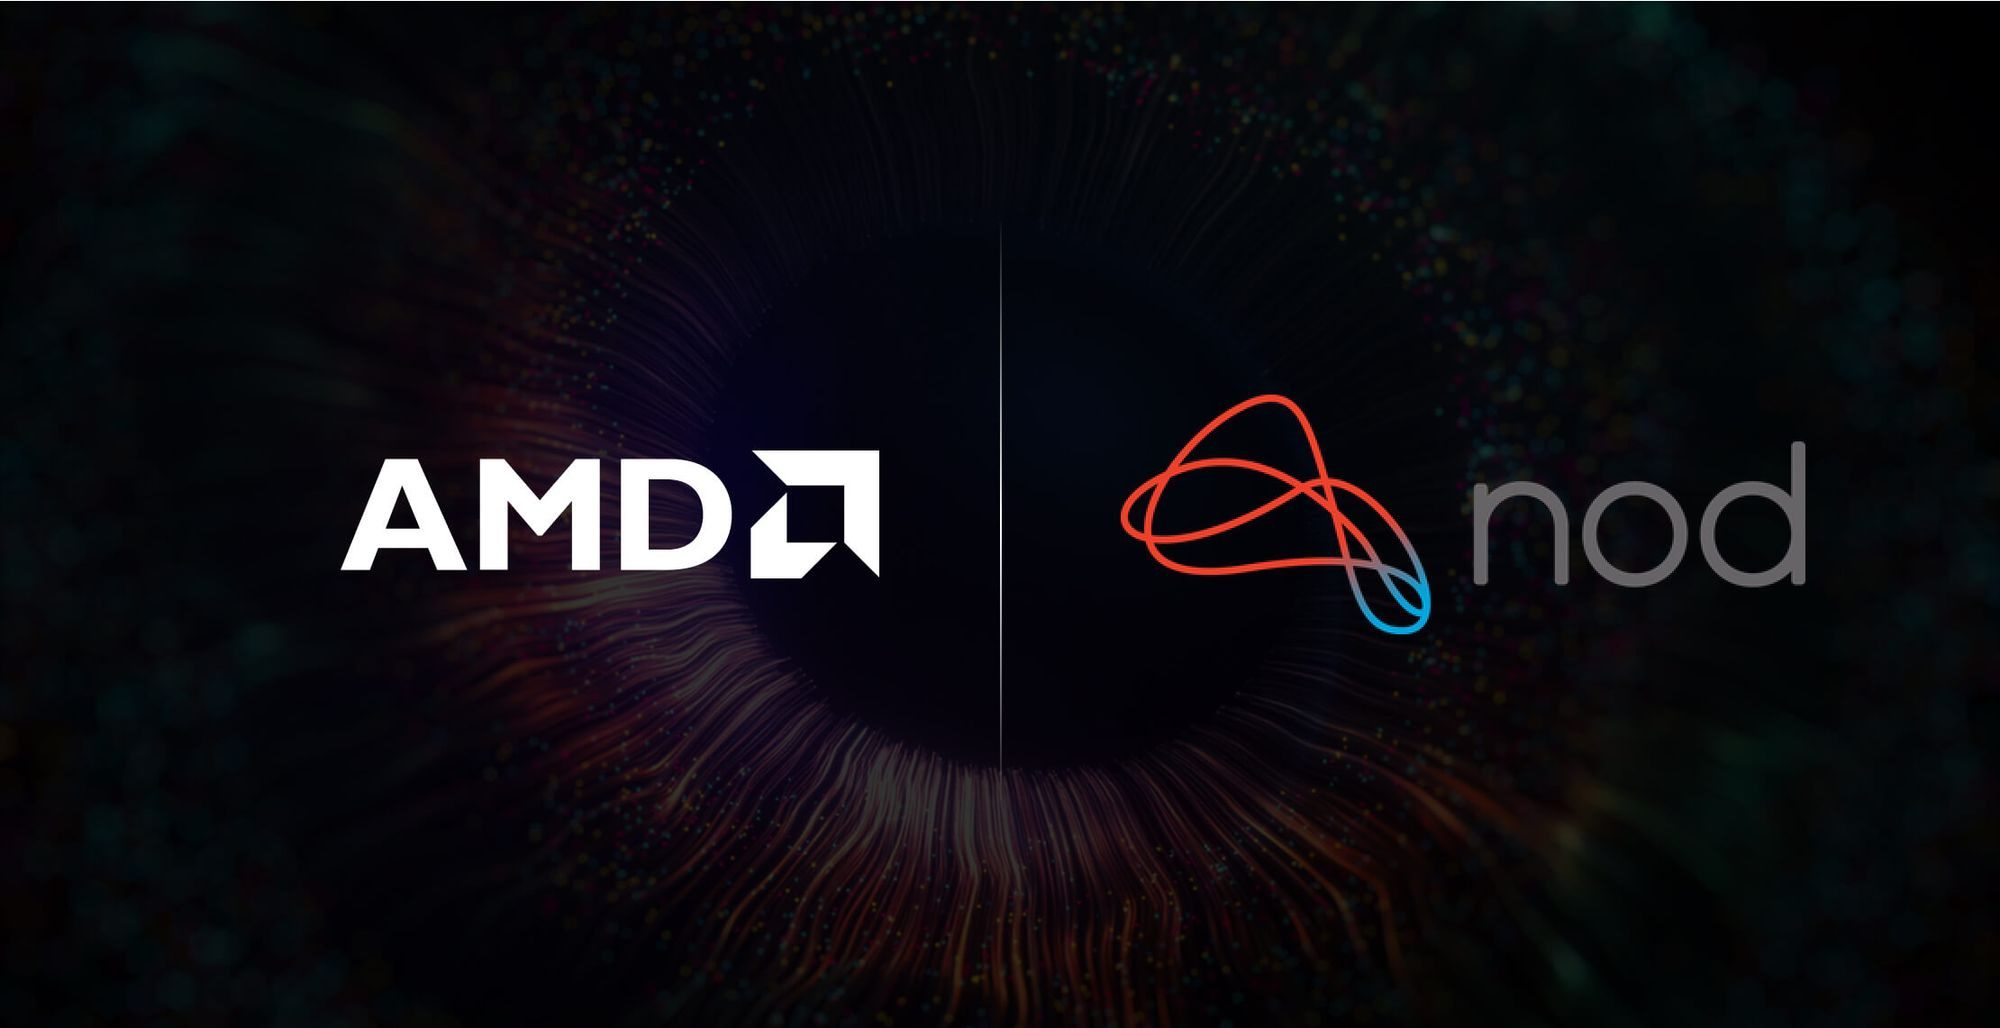 AMD mua Nod.ai, quyết cạnh tranh Nvidia